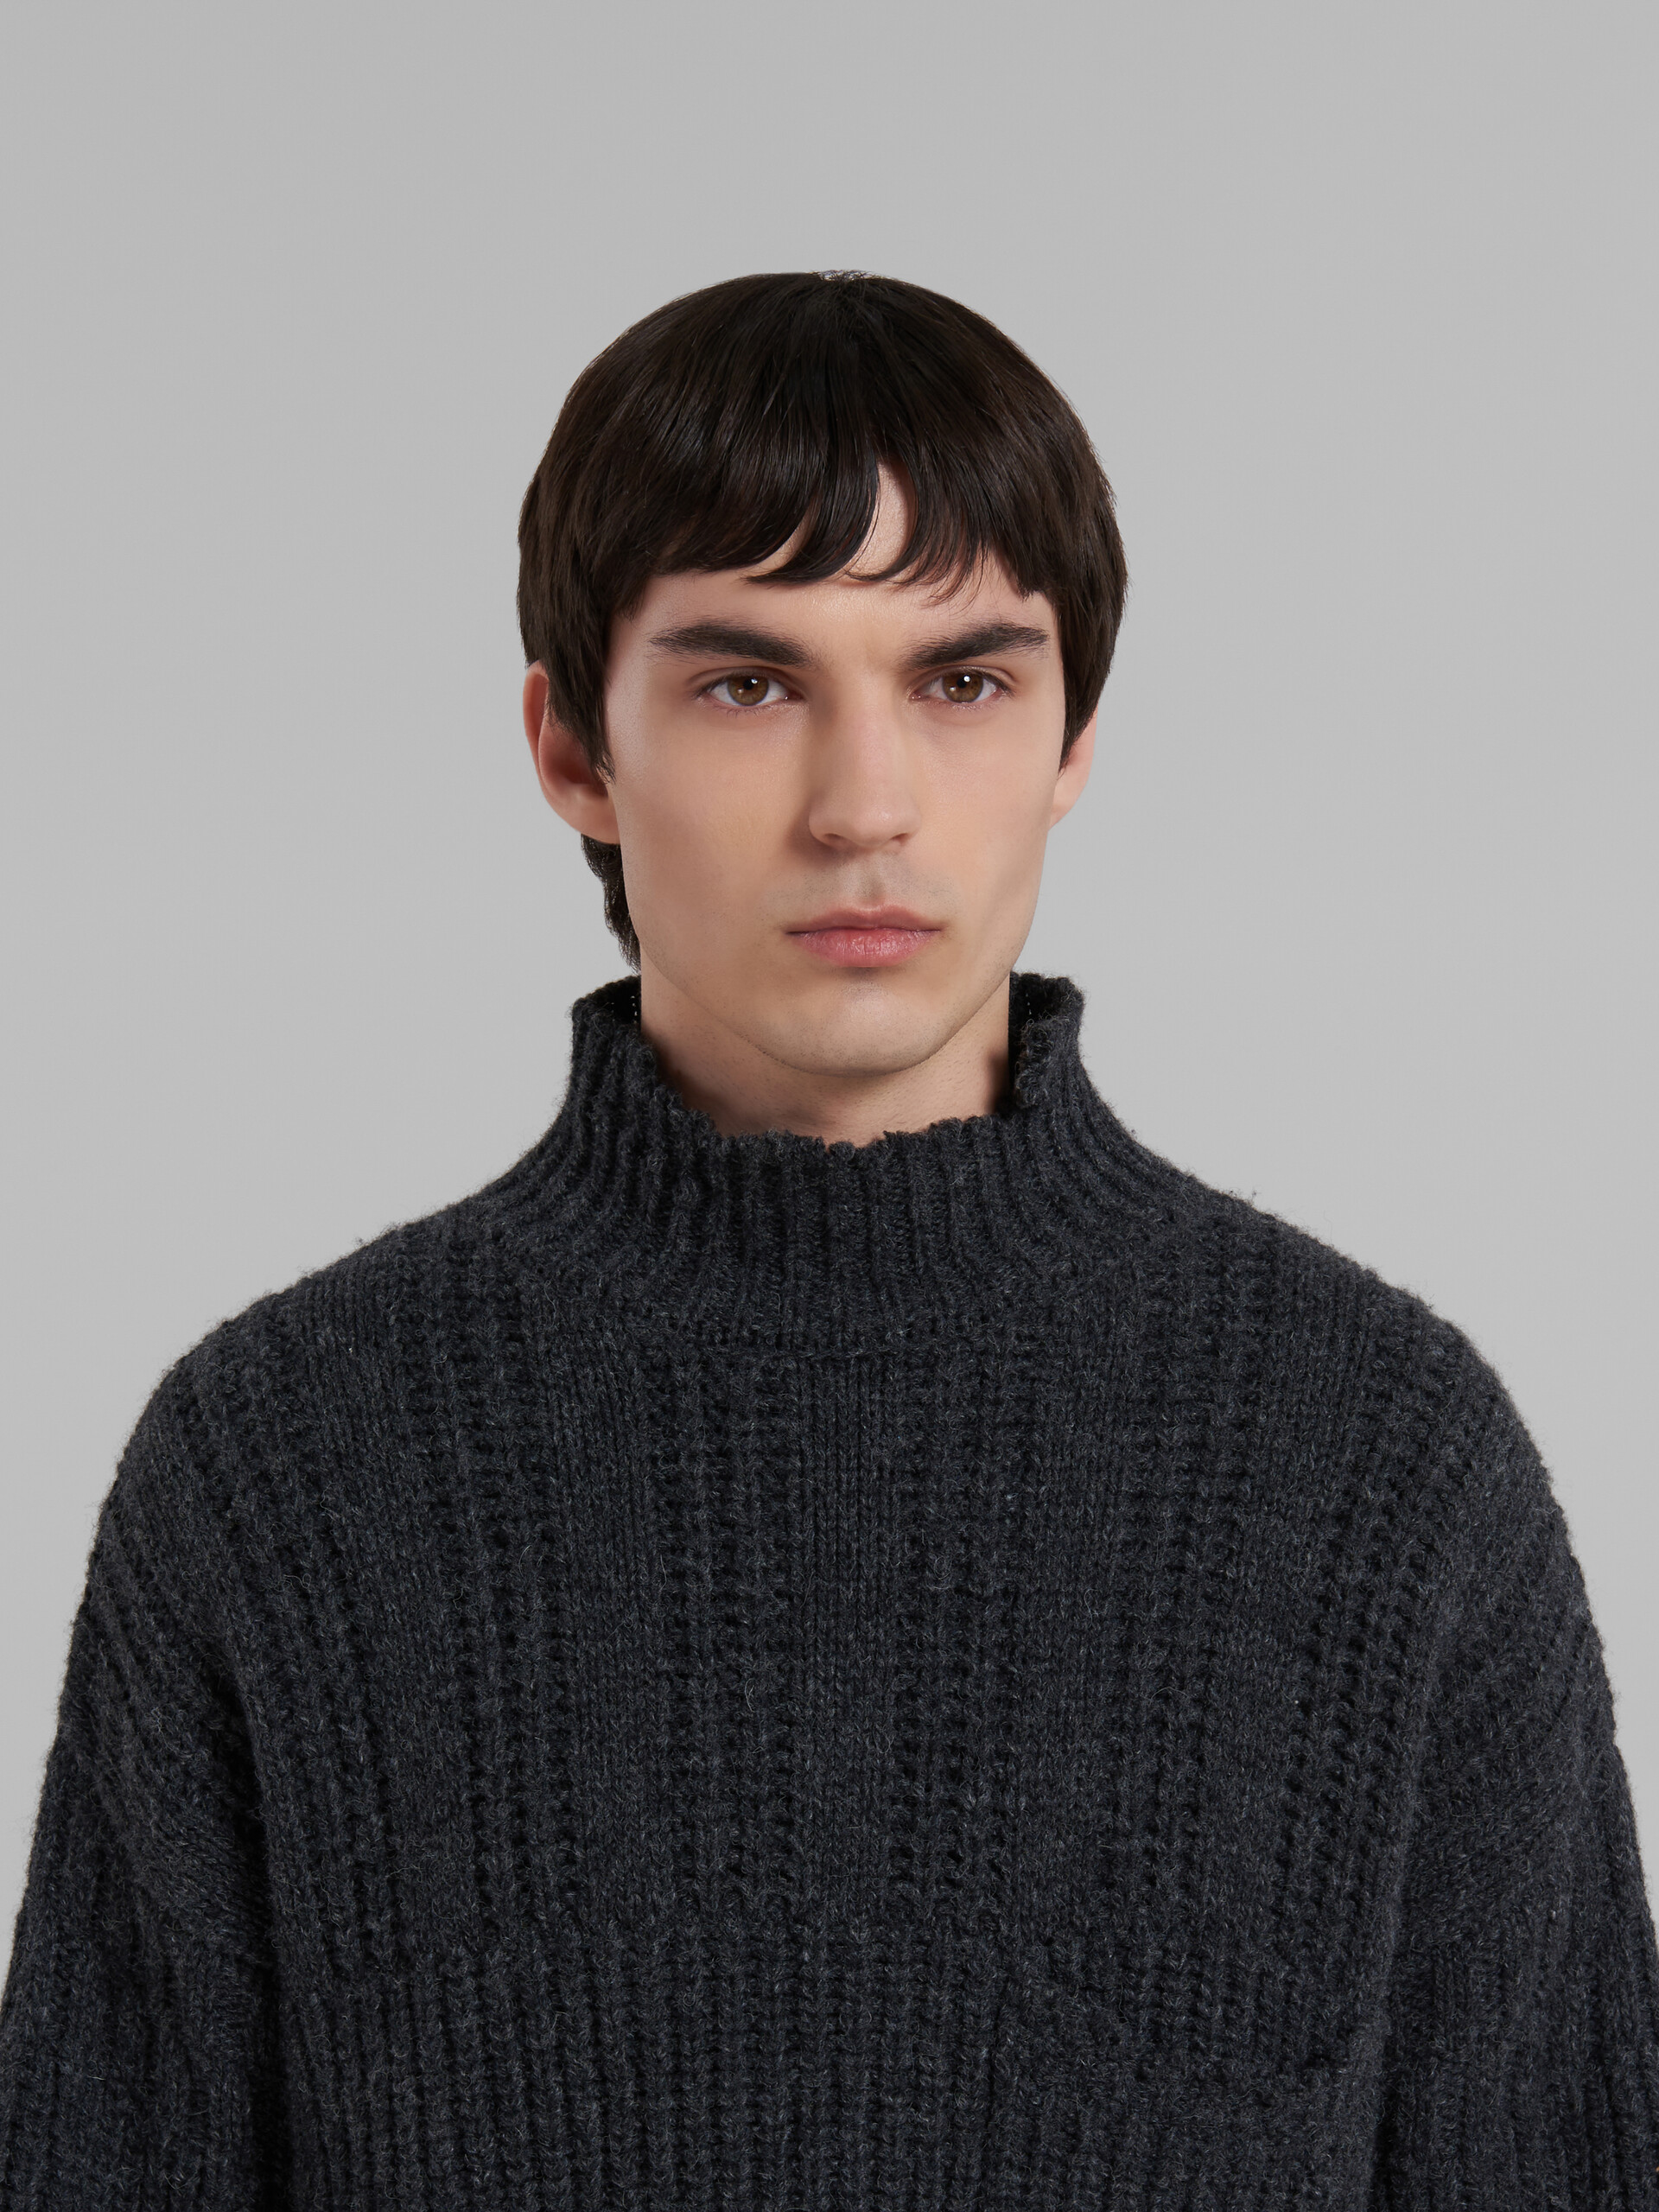 Jersey gris de lana virgen con bajo deshilachado - jerseys - Image 4